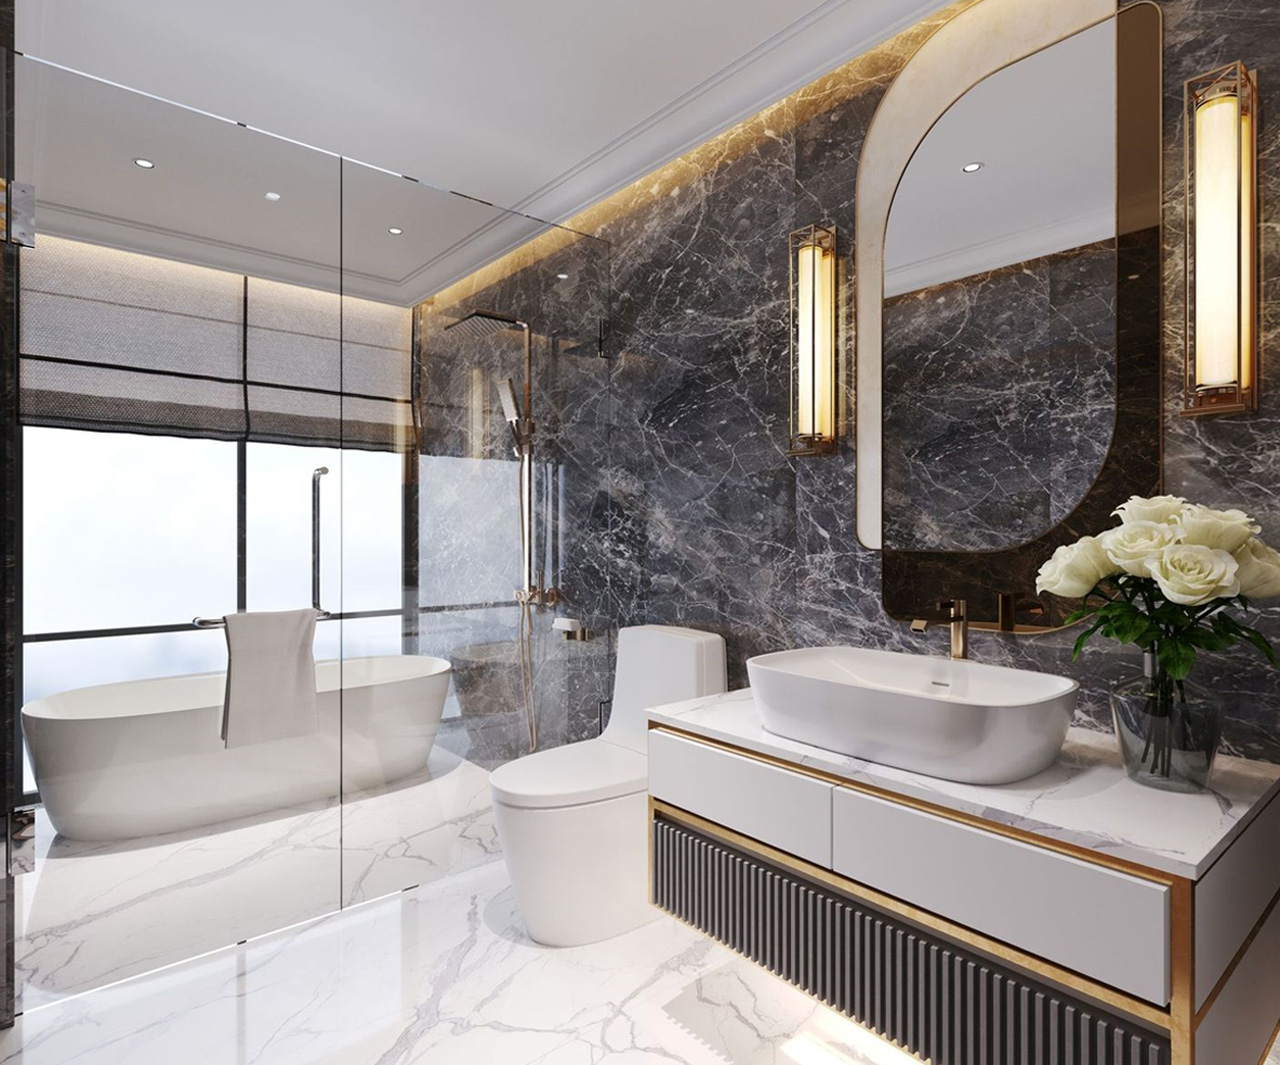 Căn hộ 3,5 phòng ngủ với phòng tắm master mạ viền vàng là lựa chọn yêu thích của đông đảo khách hàng (Phối cảnh bên trong căn hộ).